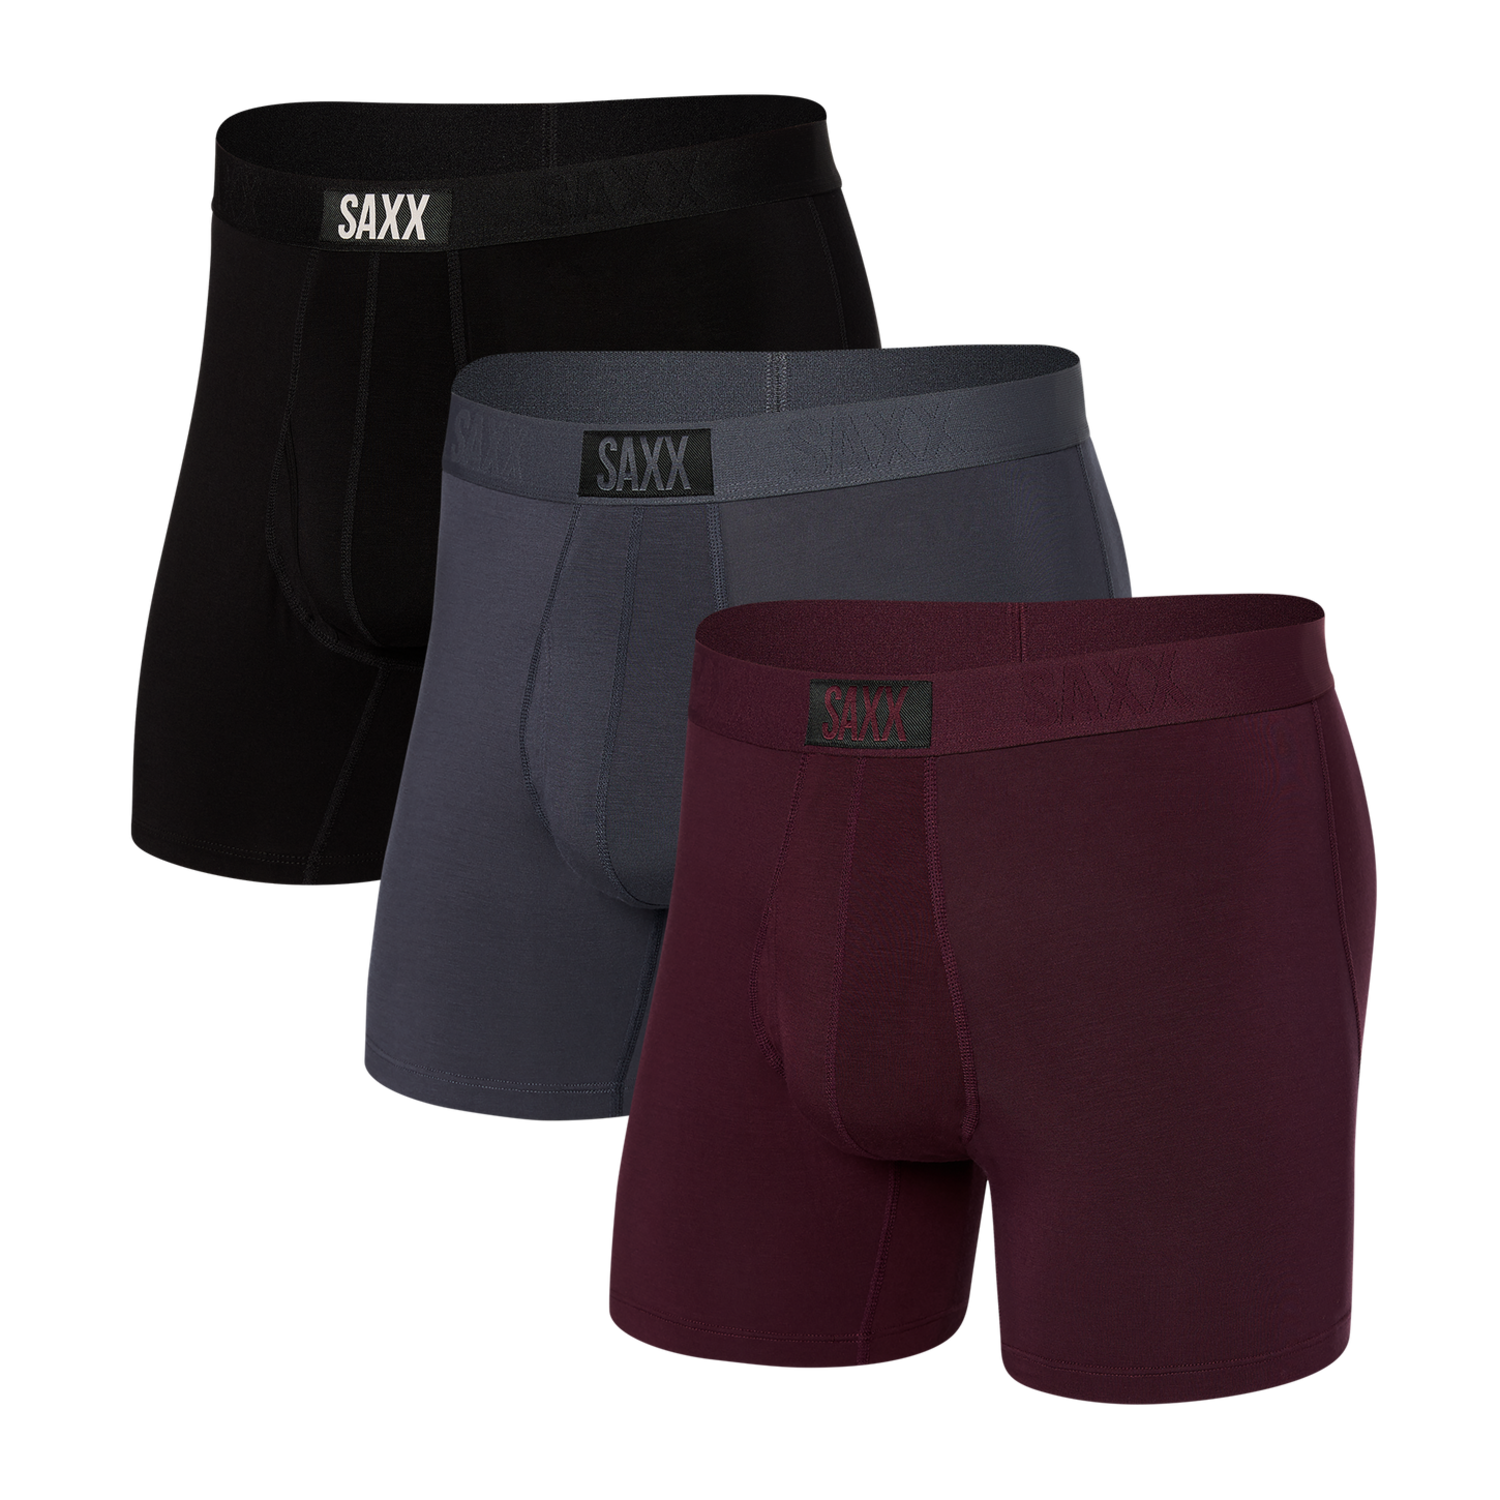 SAXX Ultra Briefs, Underwear